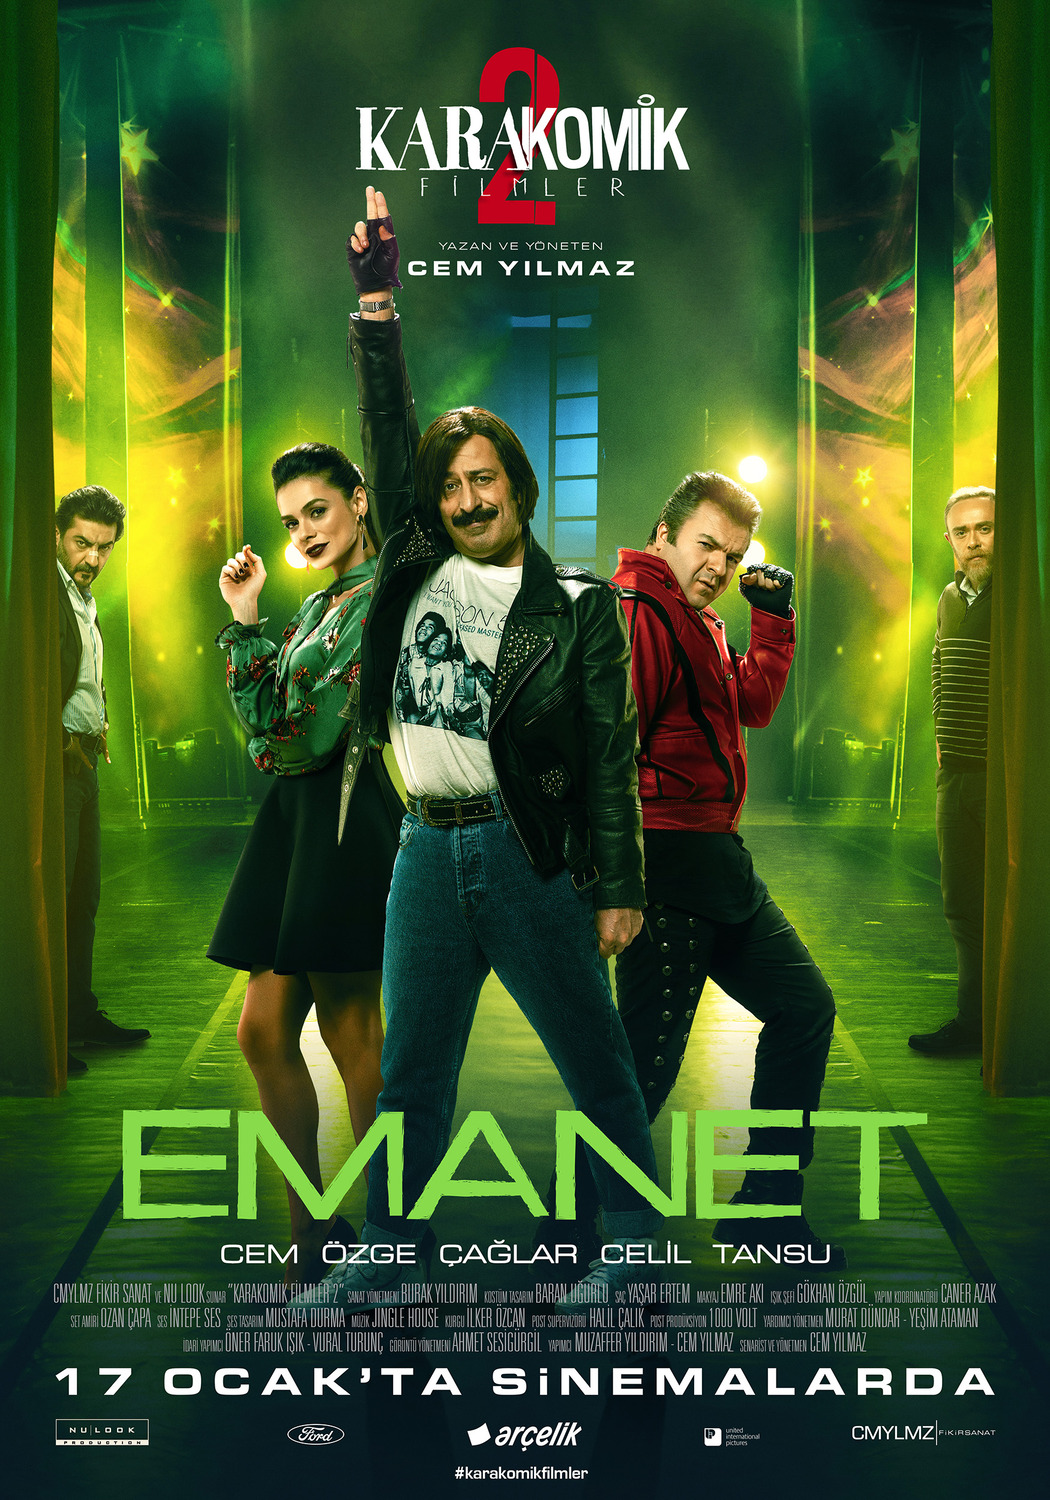 Extra Large Movie Poster Image for Karakomik Filmler: Emanet (#1 of 5)